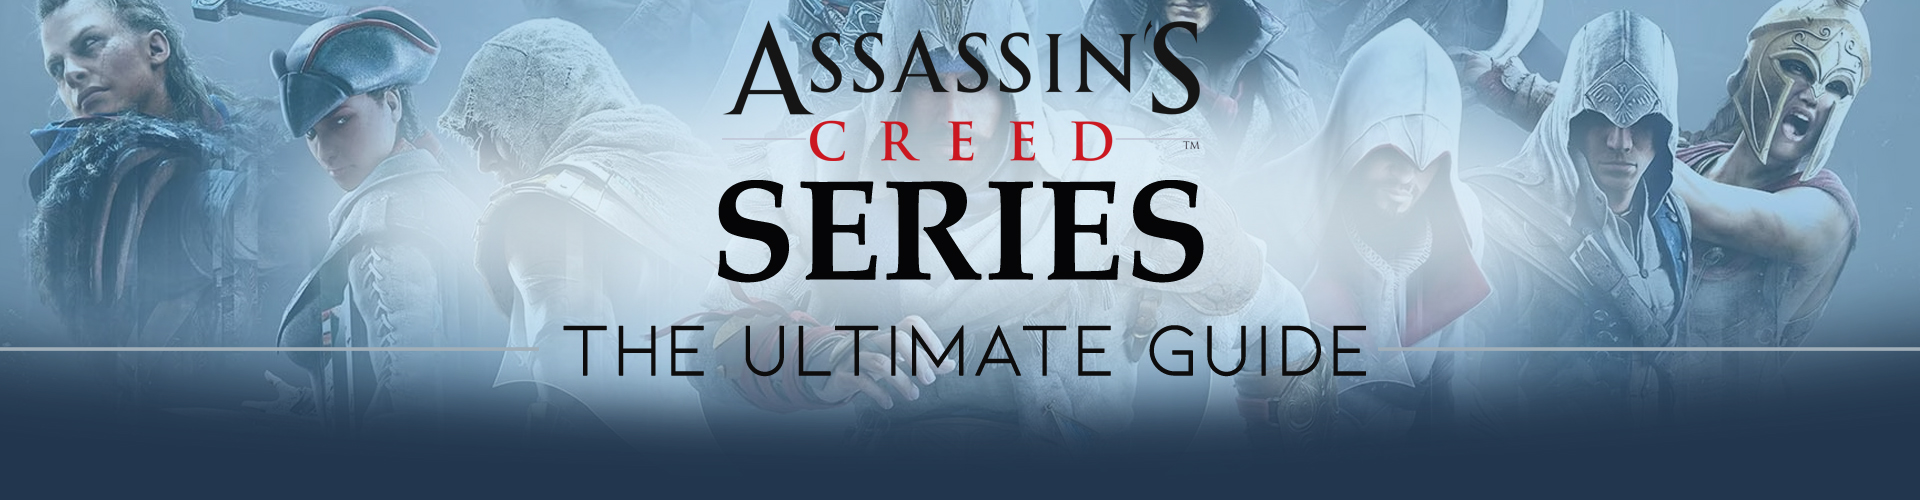 Serie Assassin's Creed: Saga di una Franchise di Culto